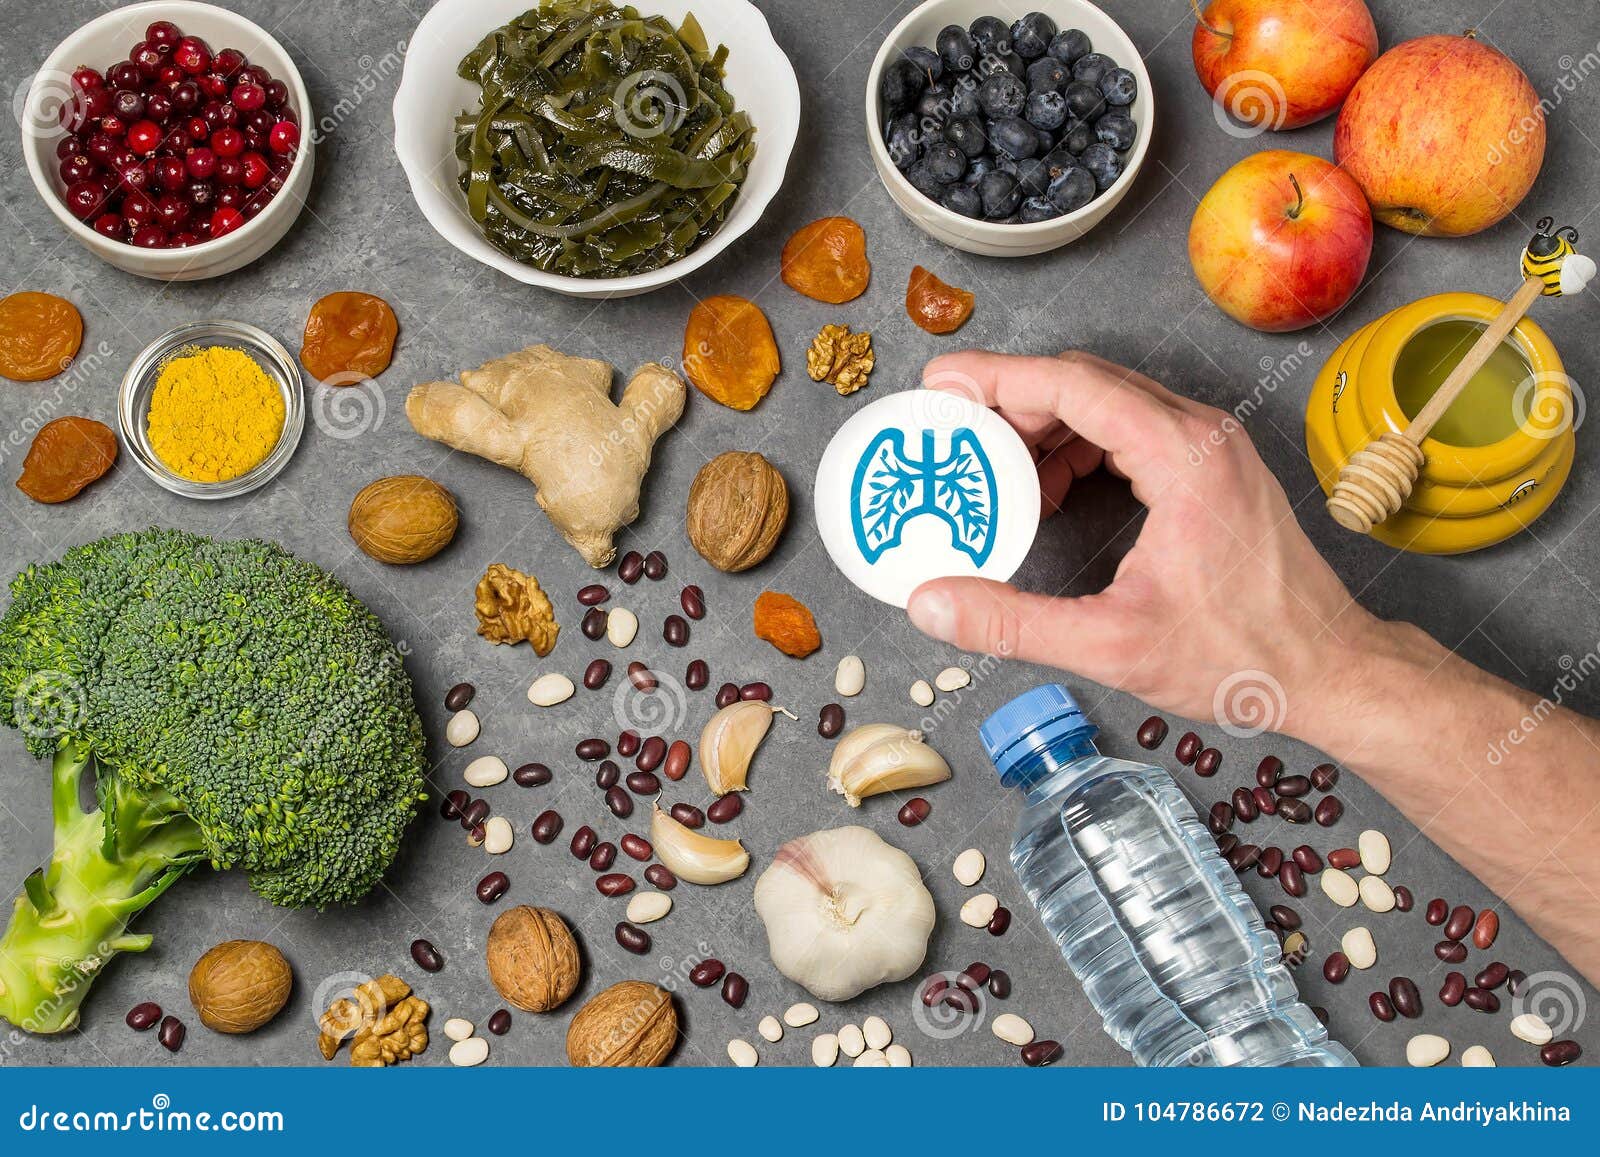 Как можно защитить продукты. Пища, полезная для легких. Полезные продукты. Продукты полезные для легких. Продукты для лёгких человека полезные.